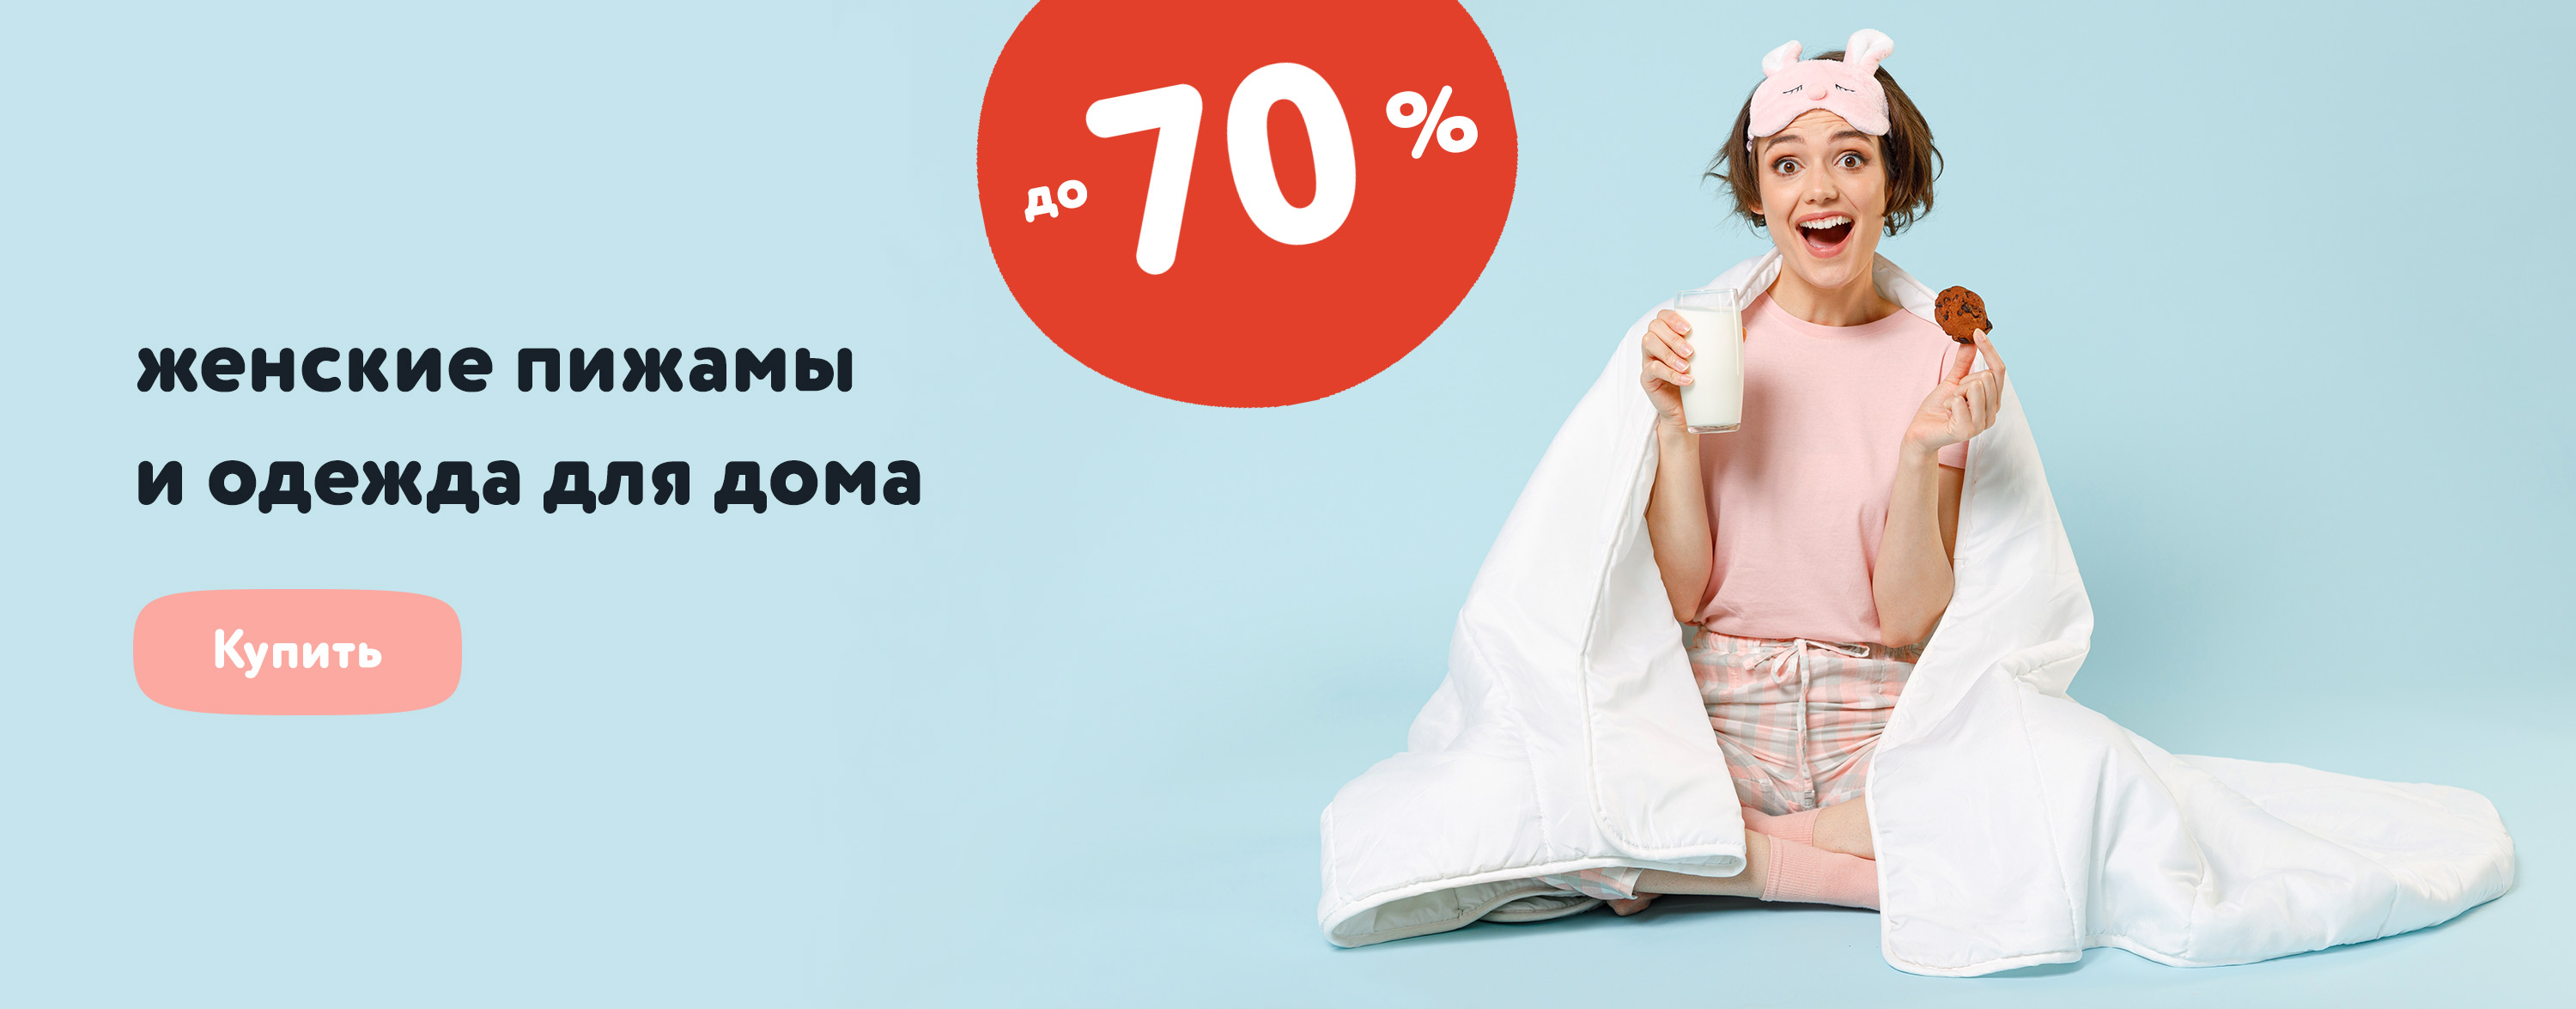 Женские пижамы и одежда для дома, скидки до 70% карусель+категории